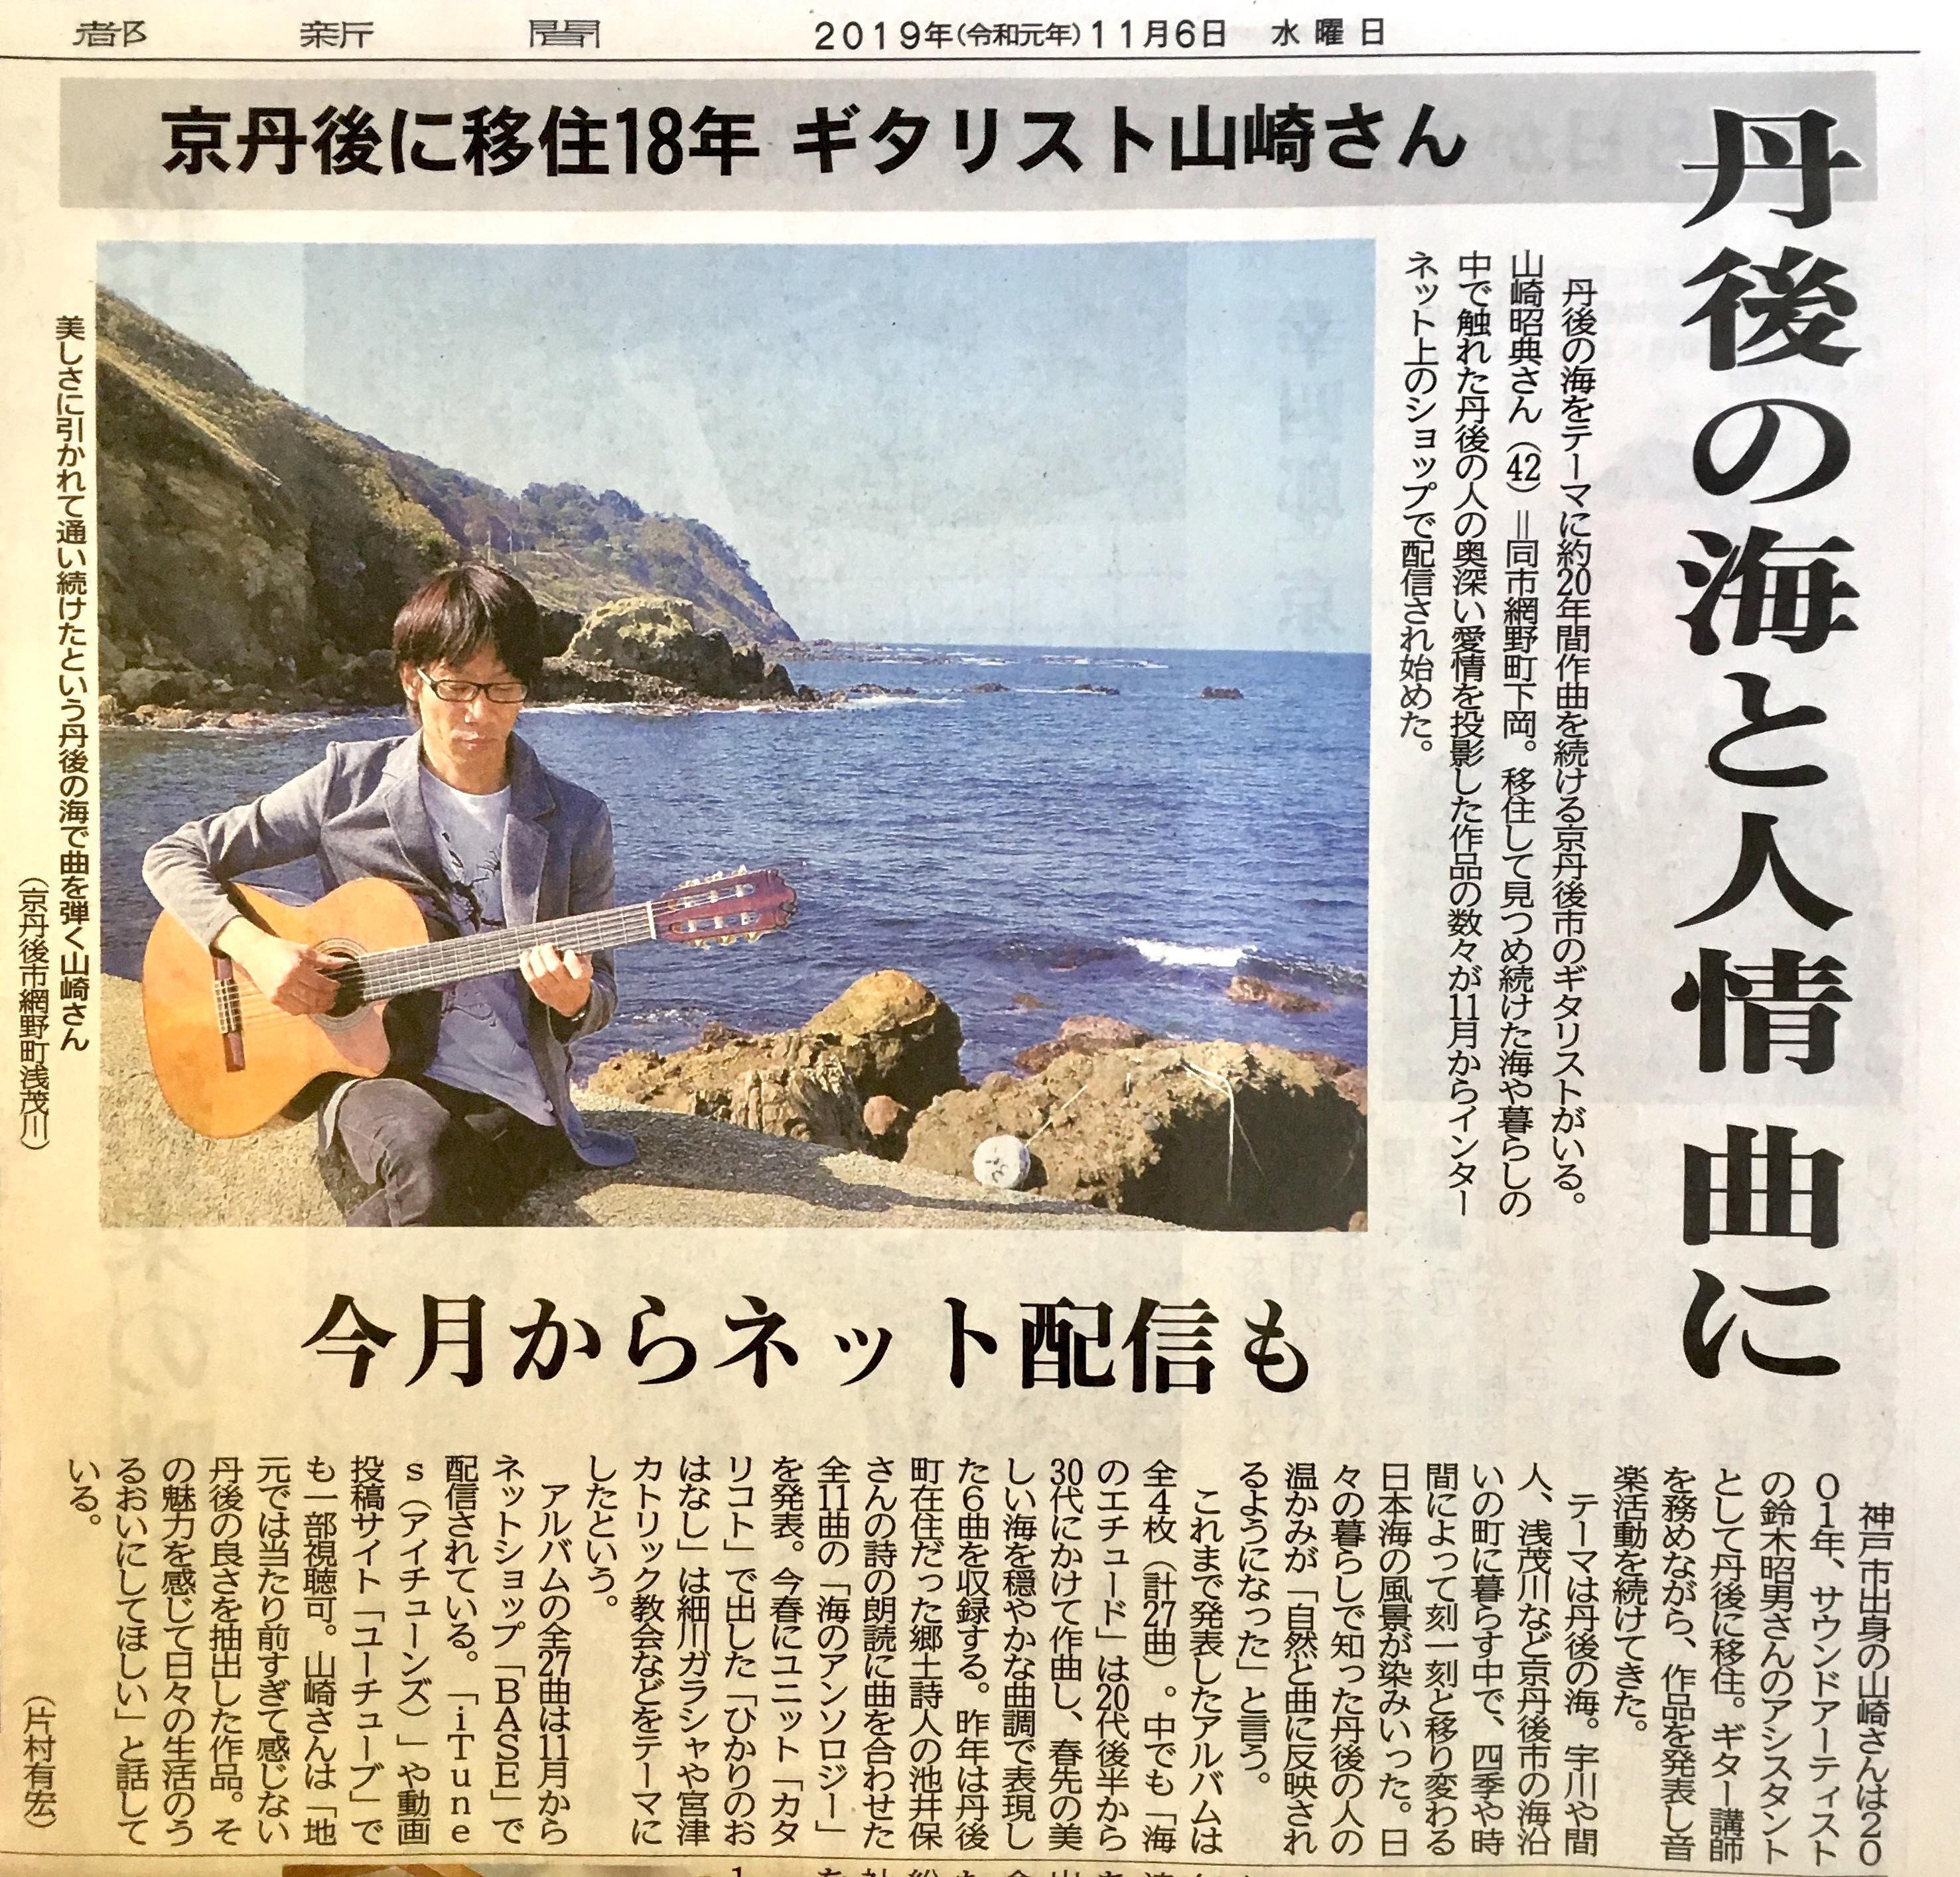 山崎昭典が京都新聞の取材を受けました。